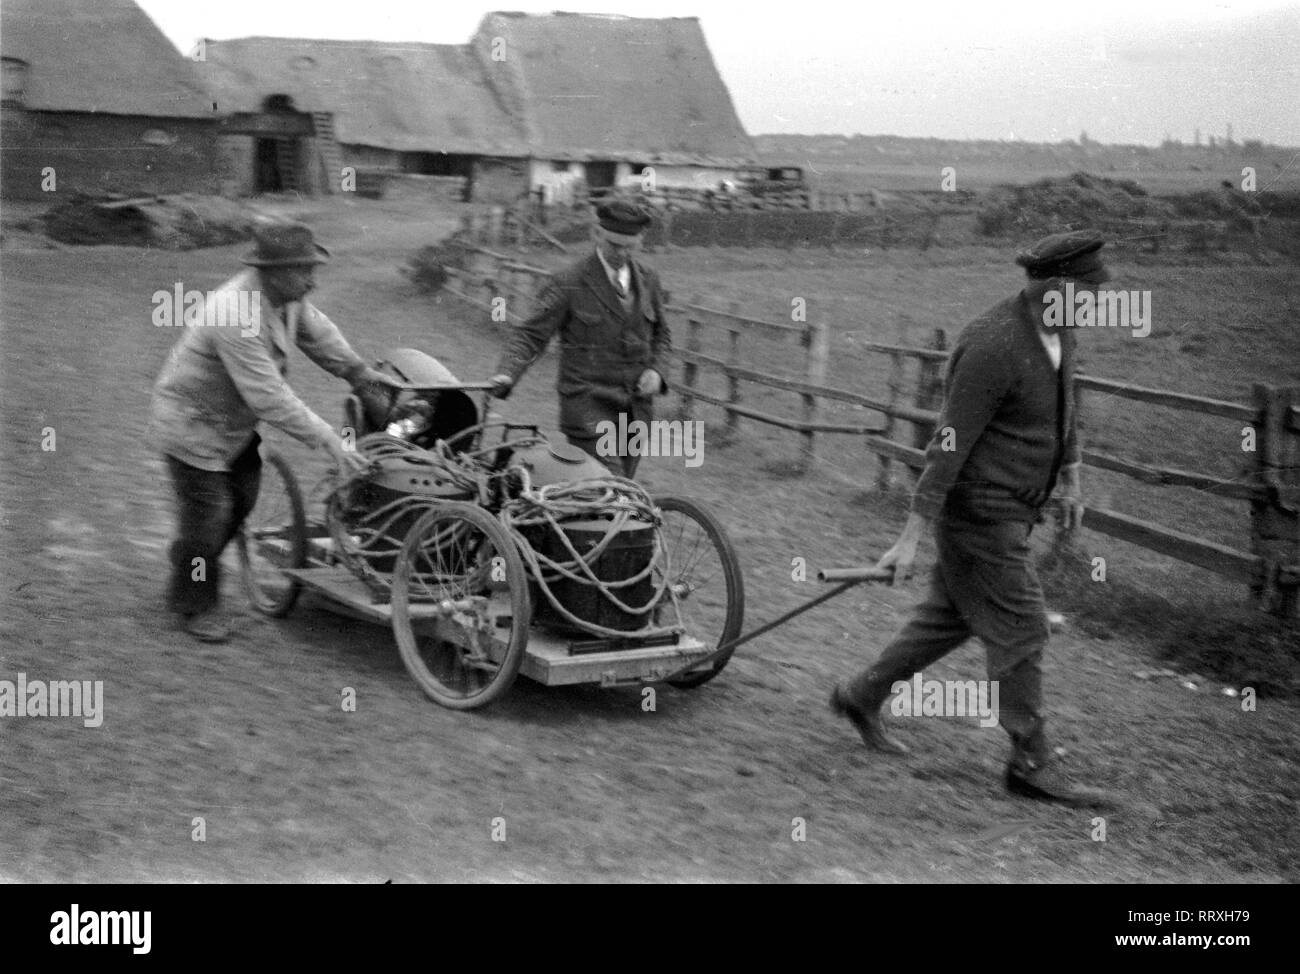 DER SCHIMMELREITER - Trois hommes transportent l'équipement de film avec une main- panier à l'endroit du film, 10/1933, I.12/24-8 Schimmelreiter Banque D'Images